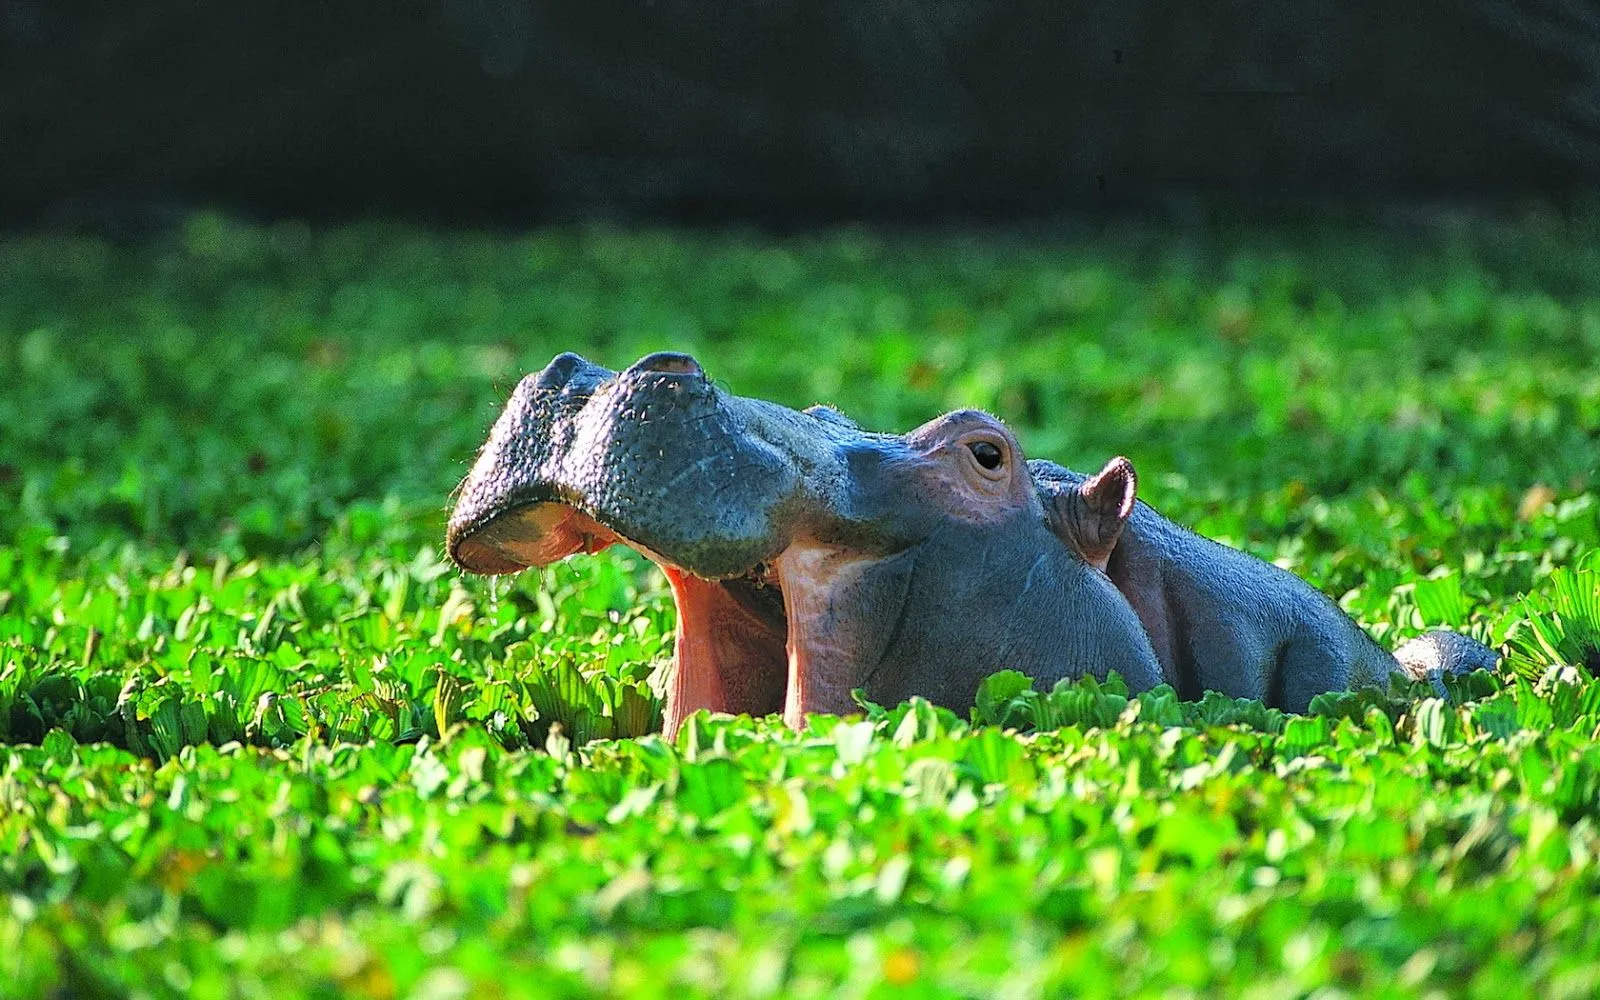 Fotos de rinocerontes y bufalo | Fotos Bonitas de Amor | Imágenes ...